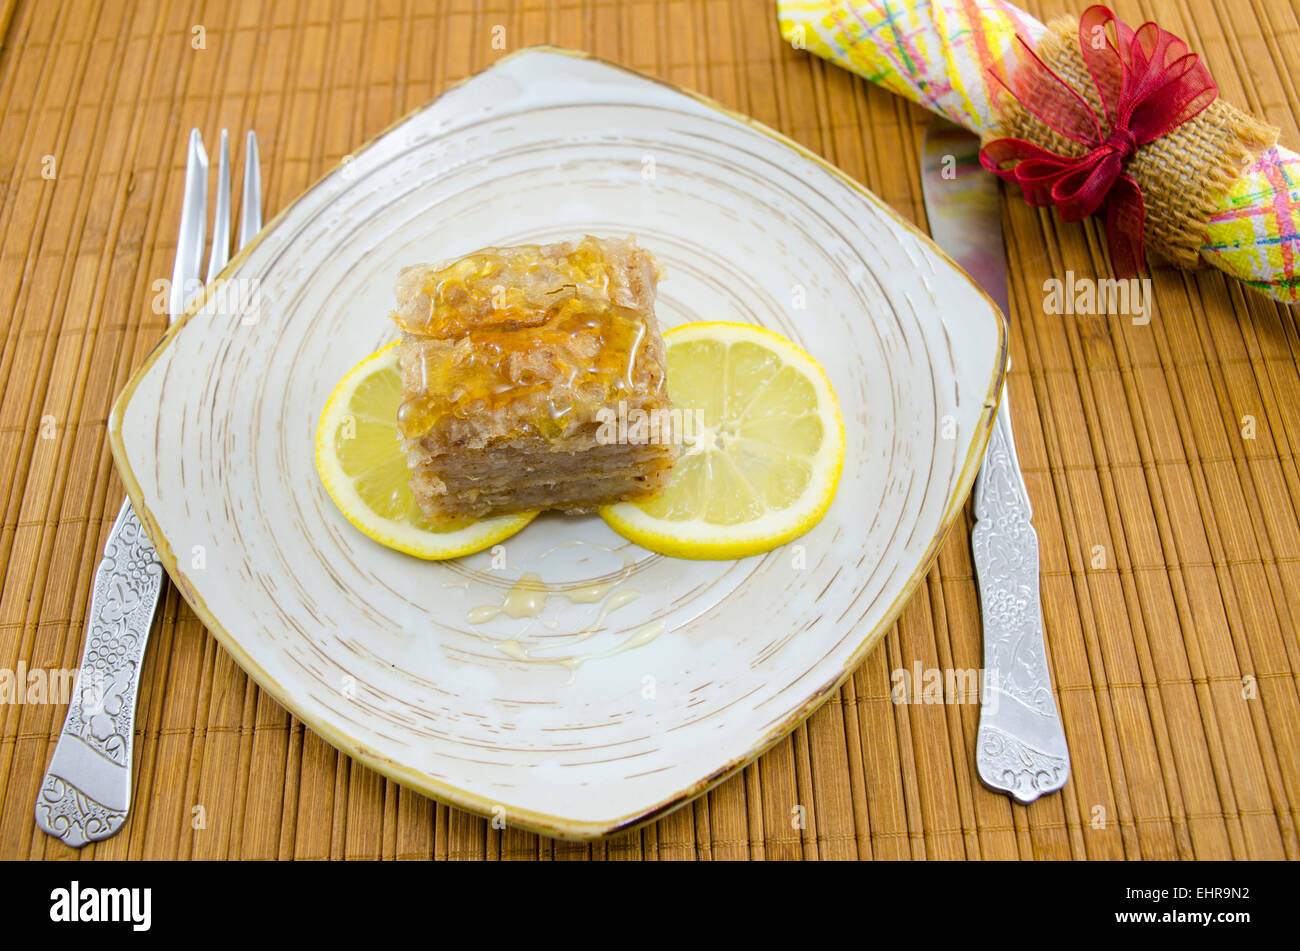 Baklava juteuse sur une assiette décorée avec des tranches de citron, prêts à être mangés Banque D'Images